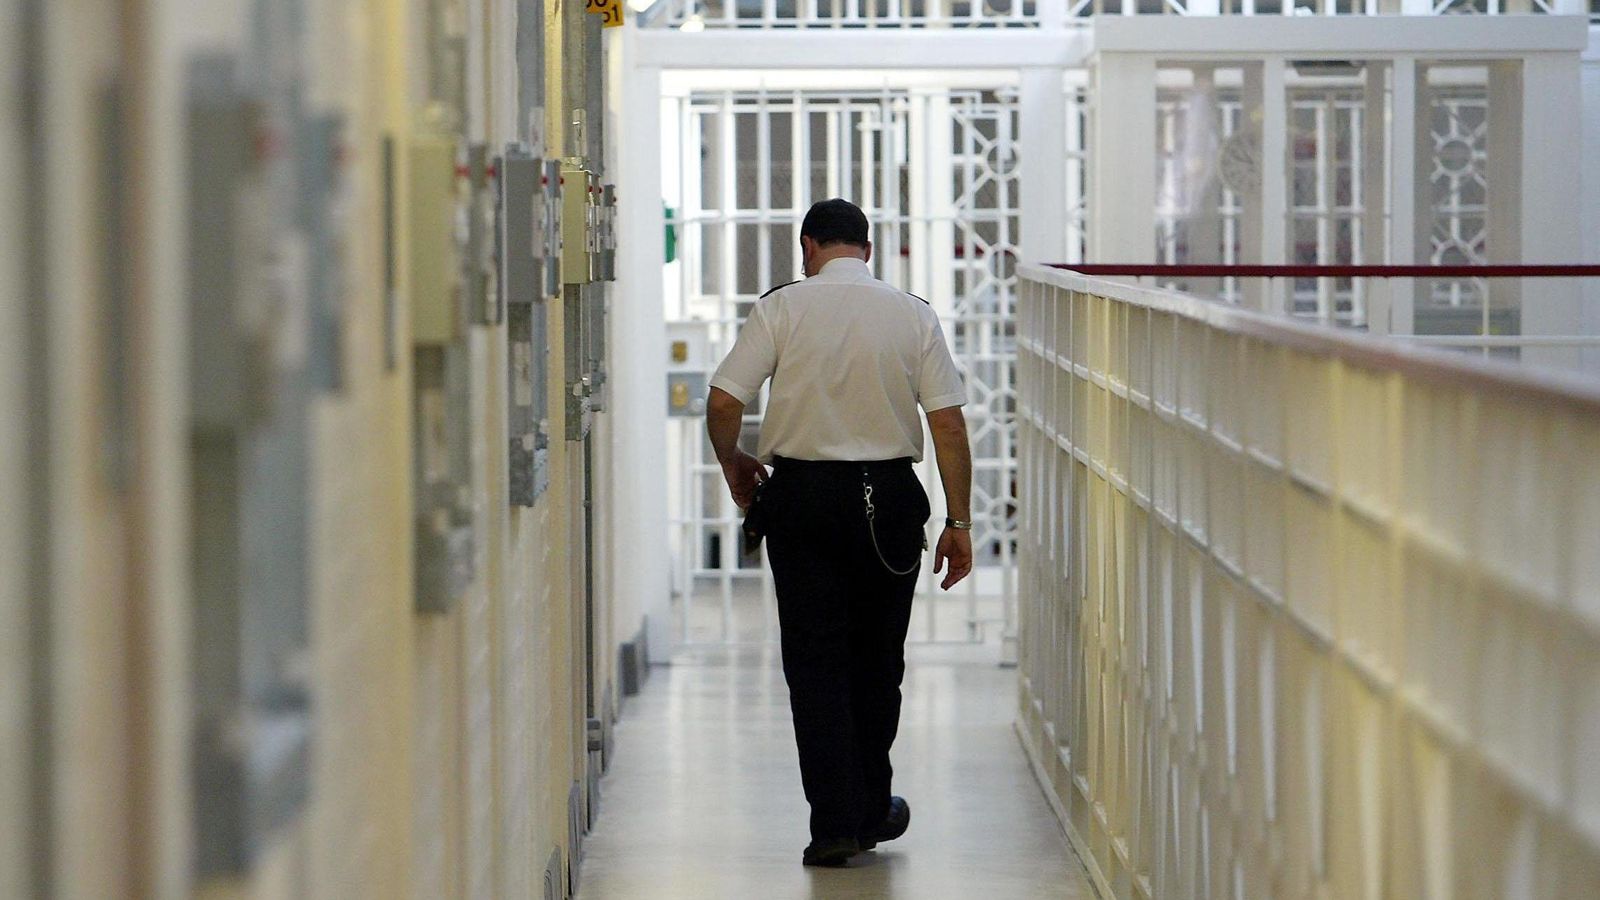 Някои затворници може също да бъдат освободени предсрочно по предложения